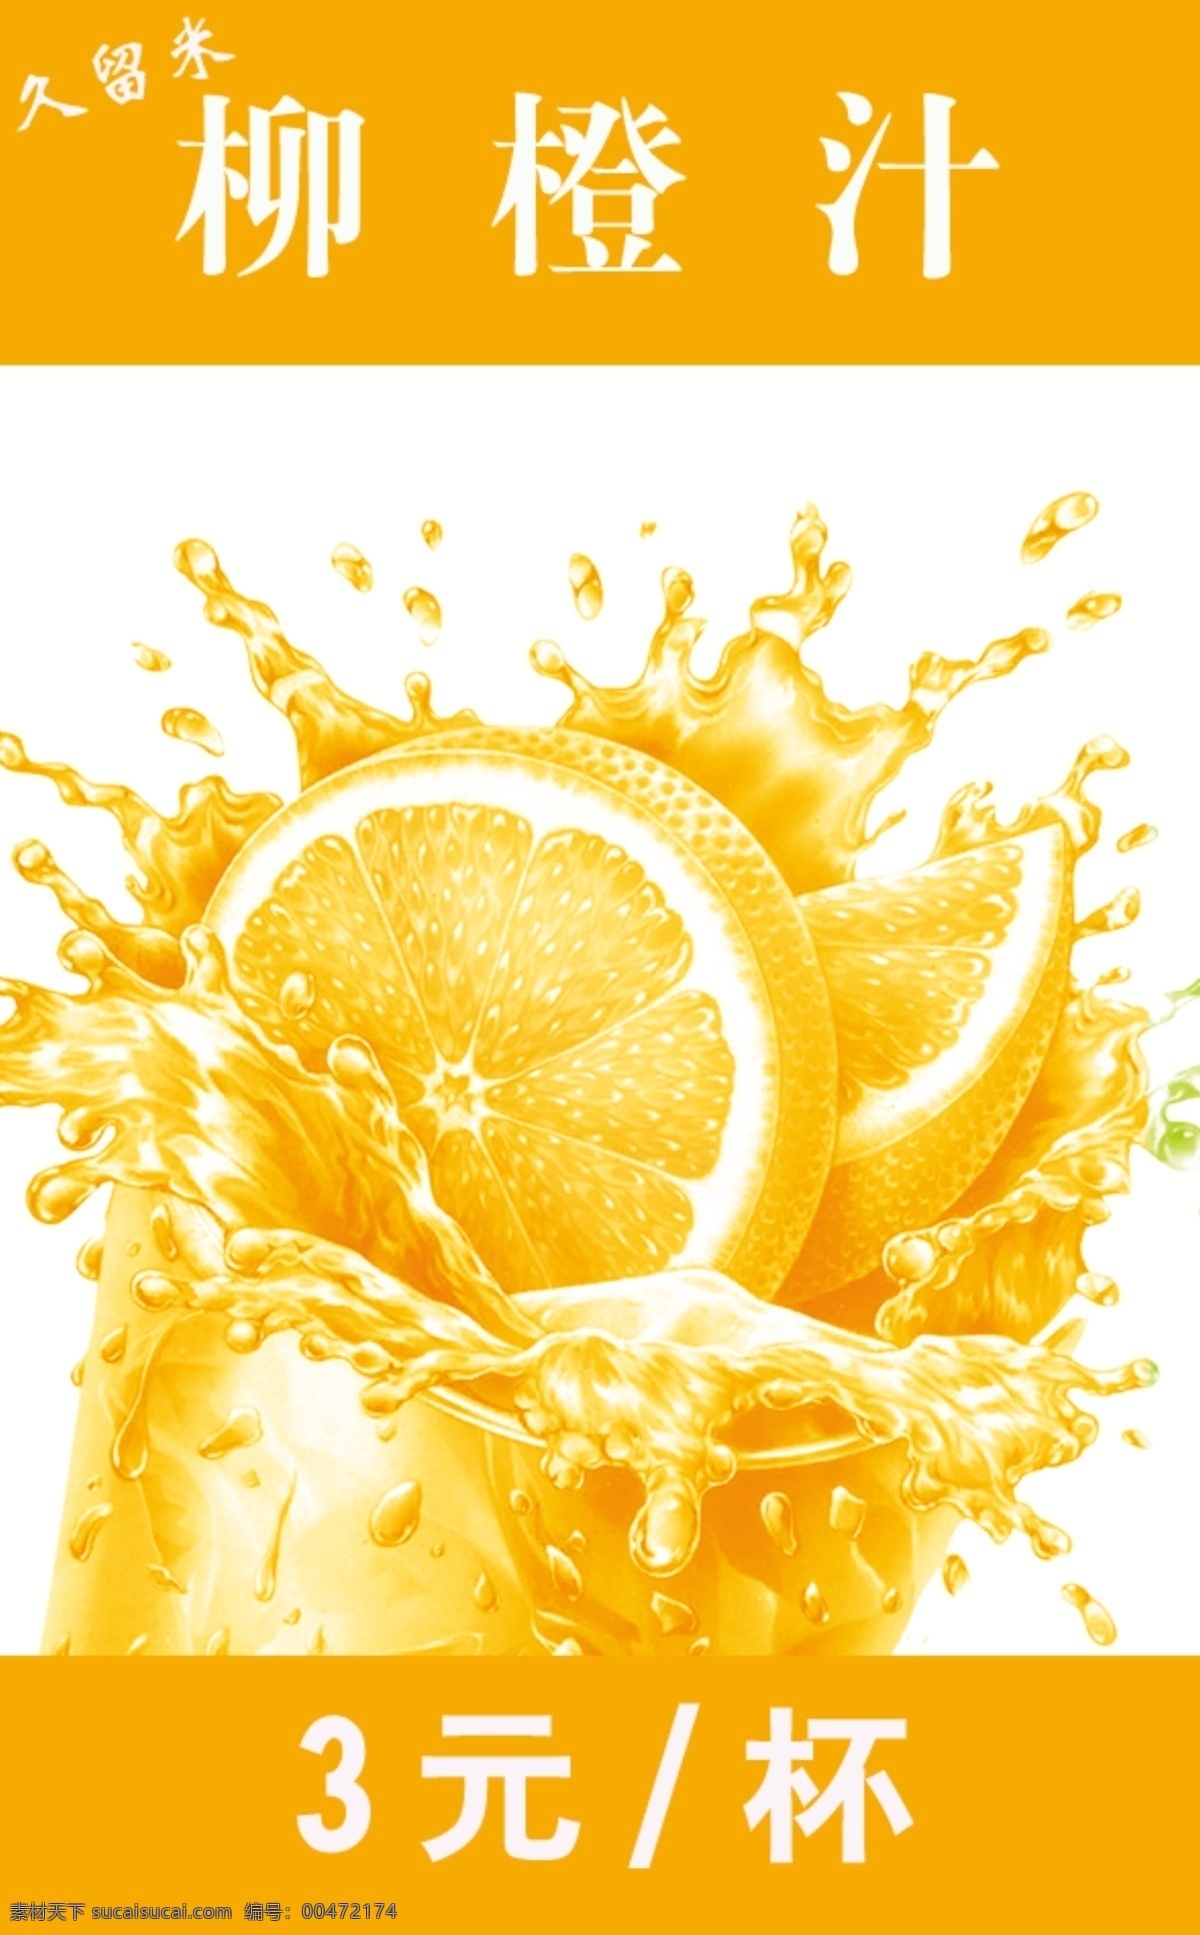 海报 柳 橙汁 模版下载 海报psd 柳橙汁 饮料 果汁 广告设计模板 源文件